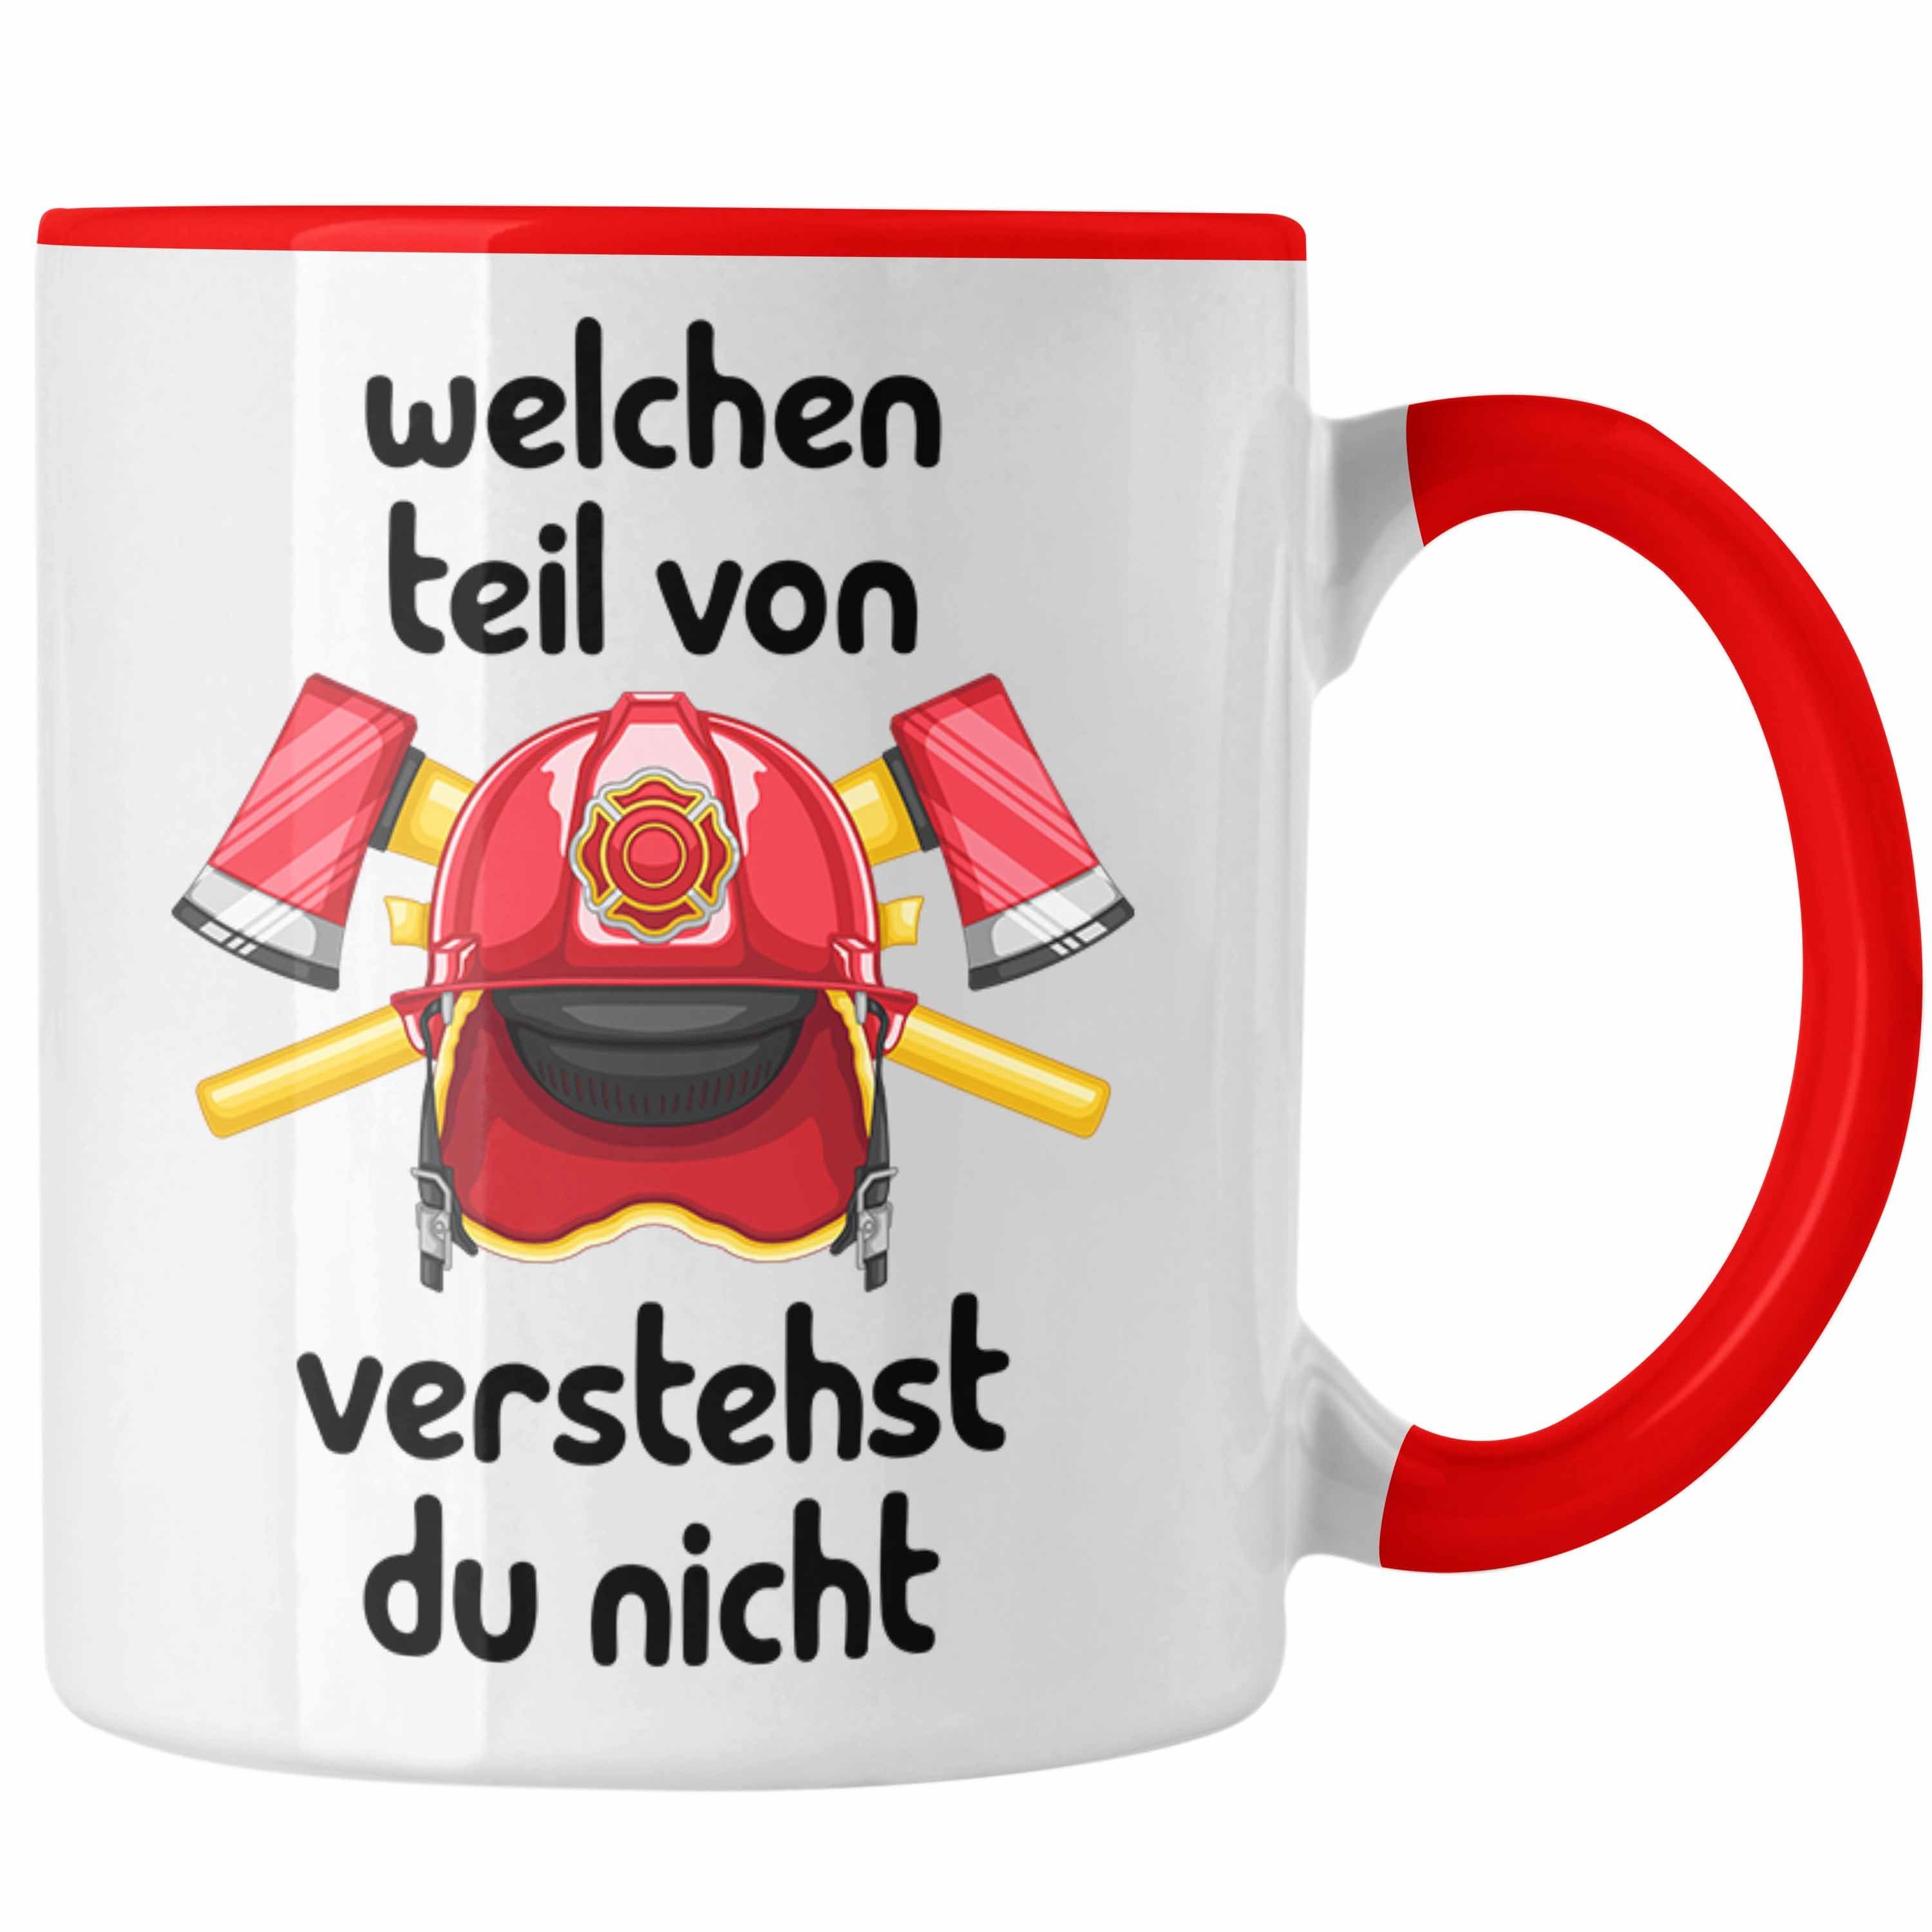 Trendation Tasse Feuerwehrmann Geschenk Verstehs Spruch Welchen Von Tasse Rot Lustiger Teil